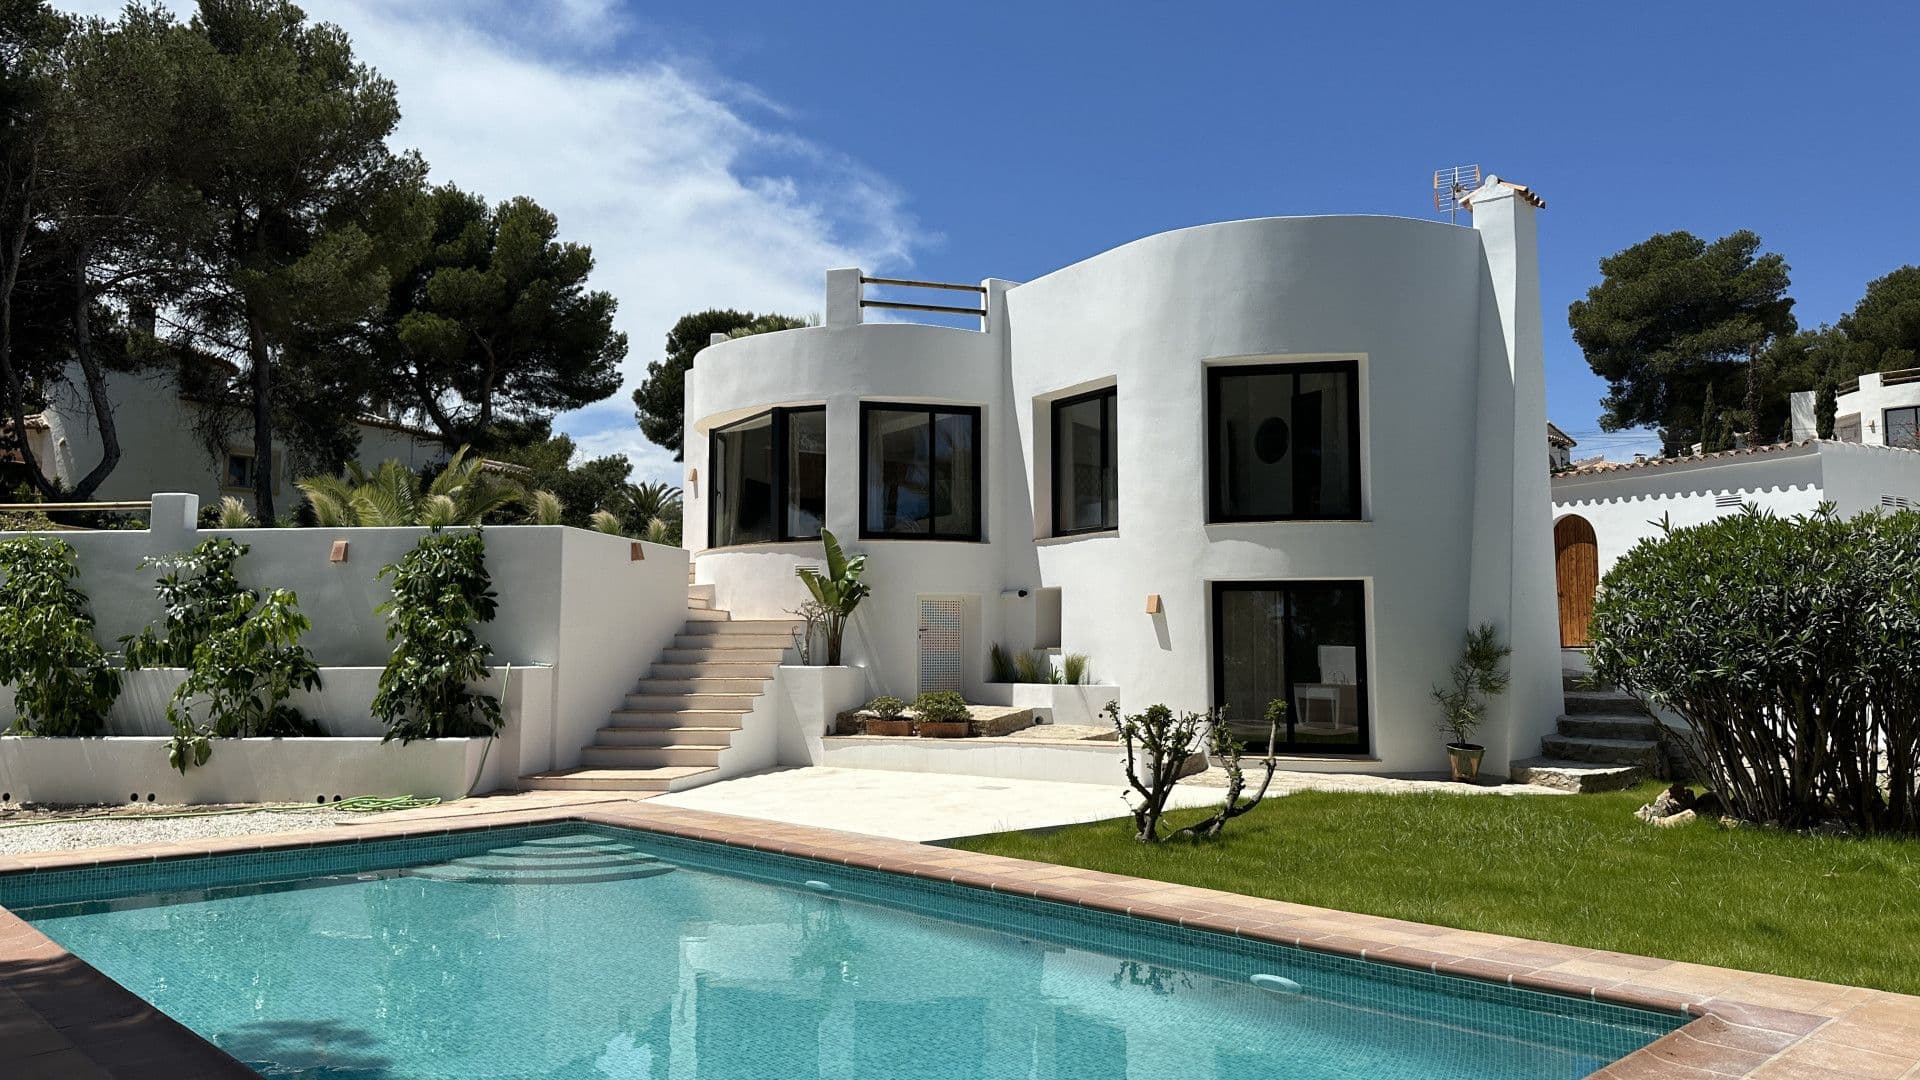 Villa de estilo ibicenco con vistas al mar en la zona de Cap Negre, Jávea (Alicante)